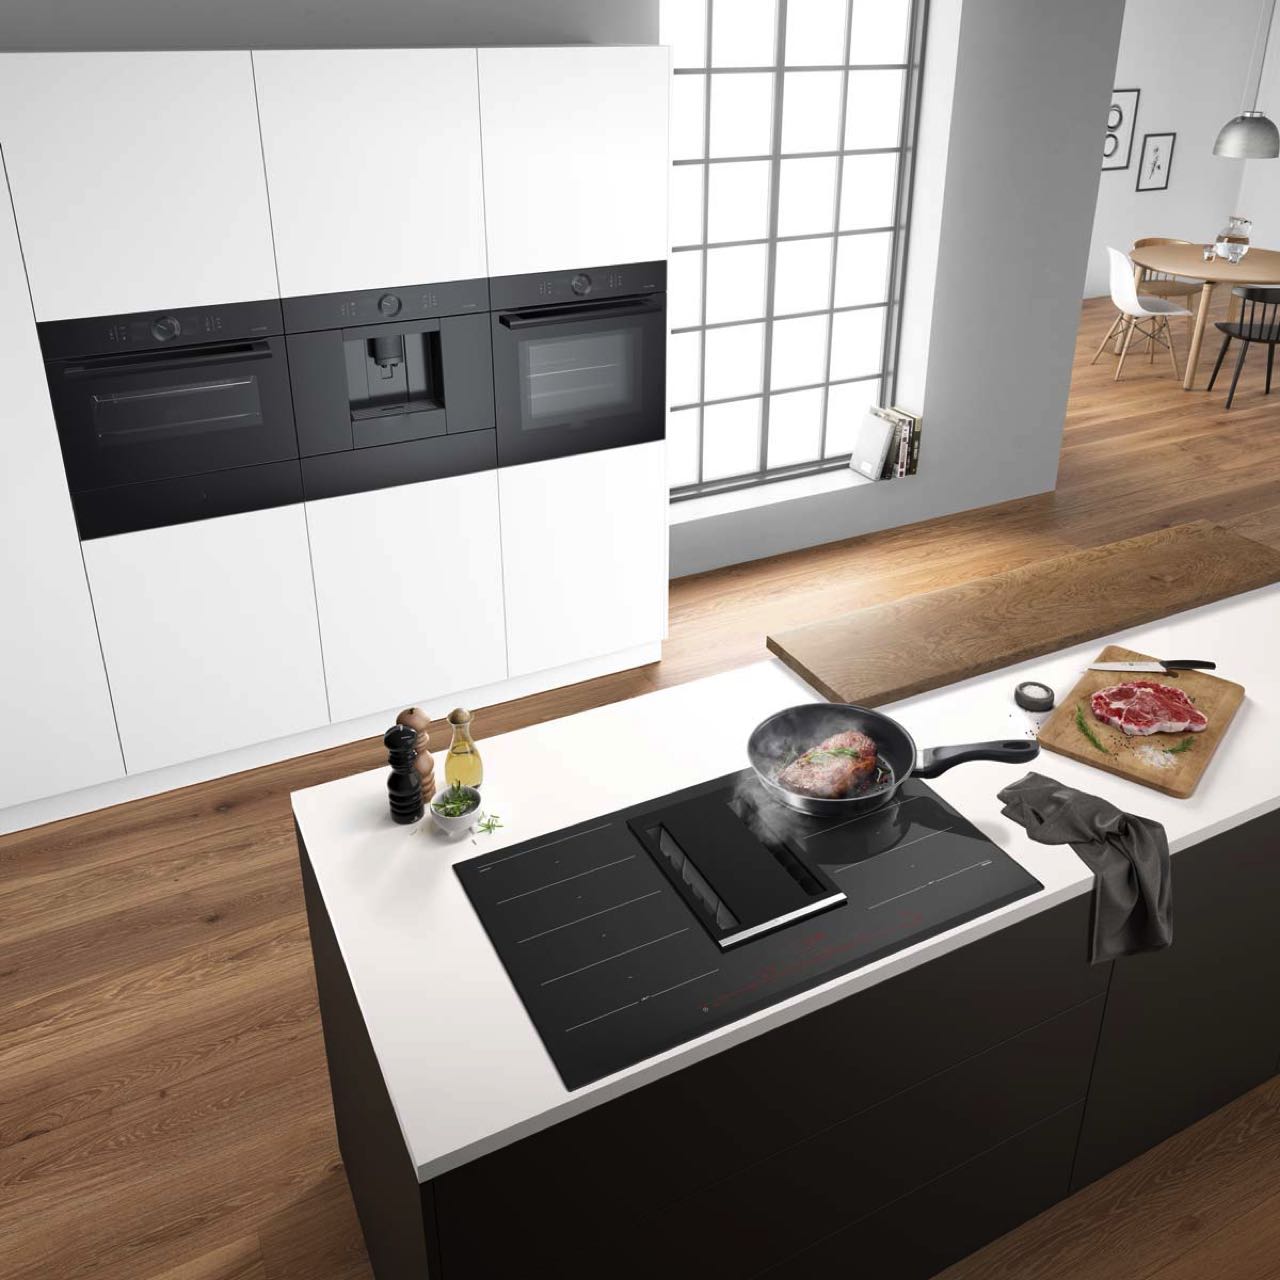 Die hochgesetzten Backöfen in dieser modernen Küchenzeile bieten einen ergonomischen Vorteil, da sie eine komfortable Bedienung auf Augenhöhe ermöglichen. Foto: AMK